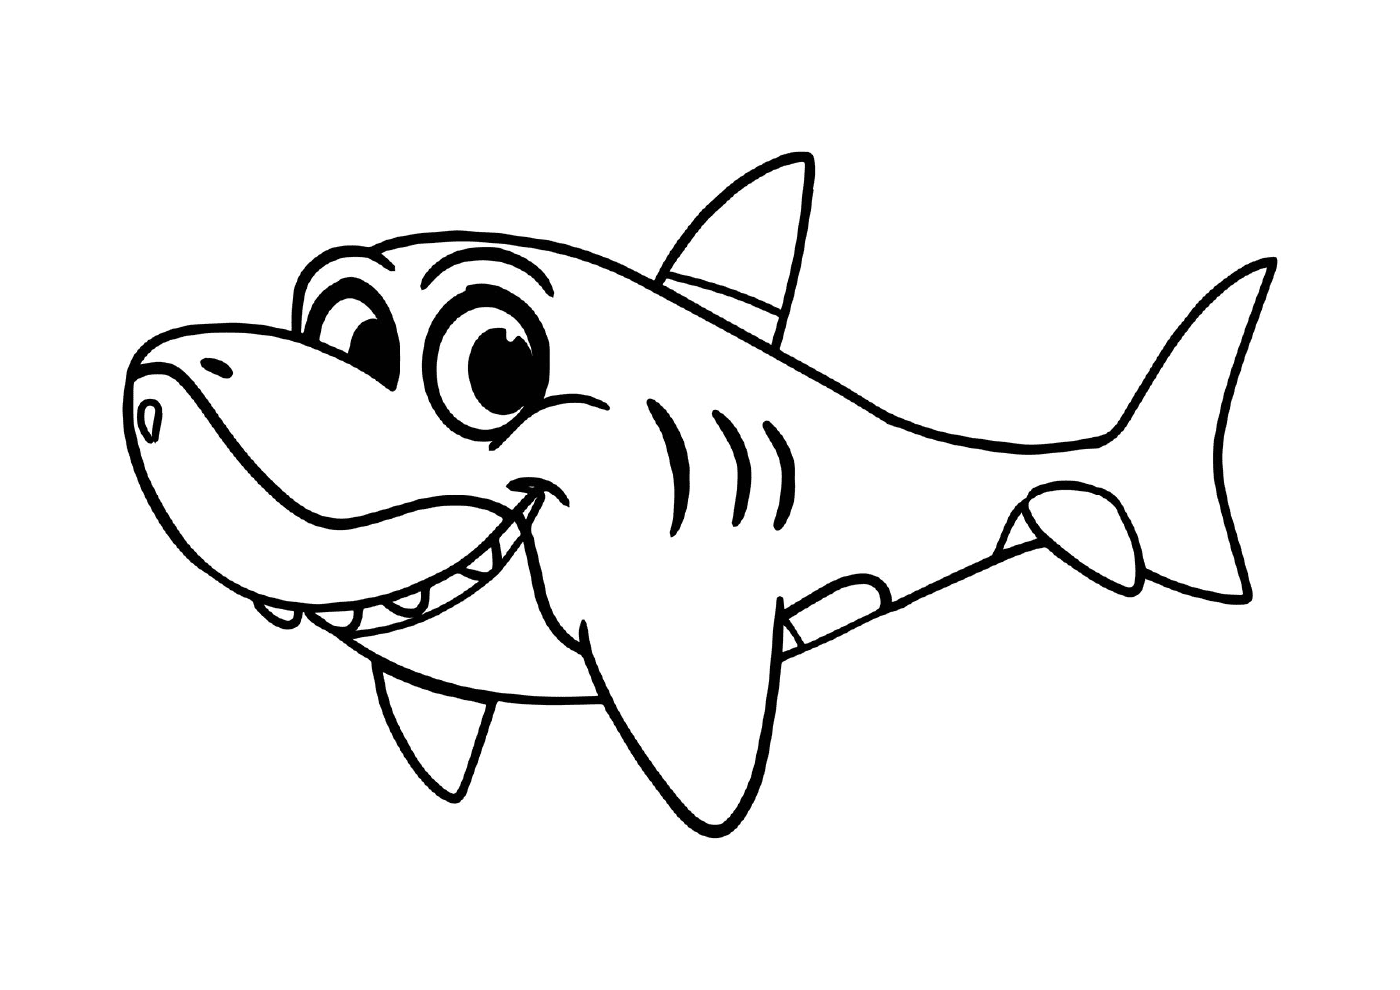  Tiburón sonriente fácil 